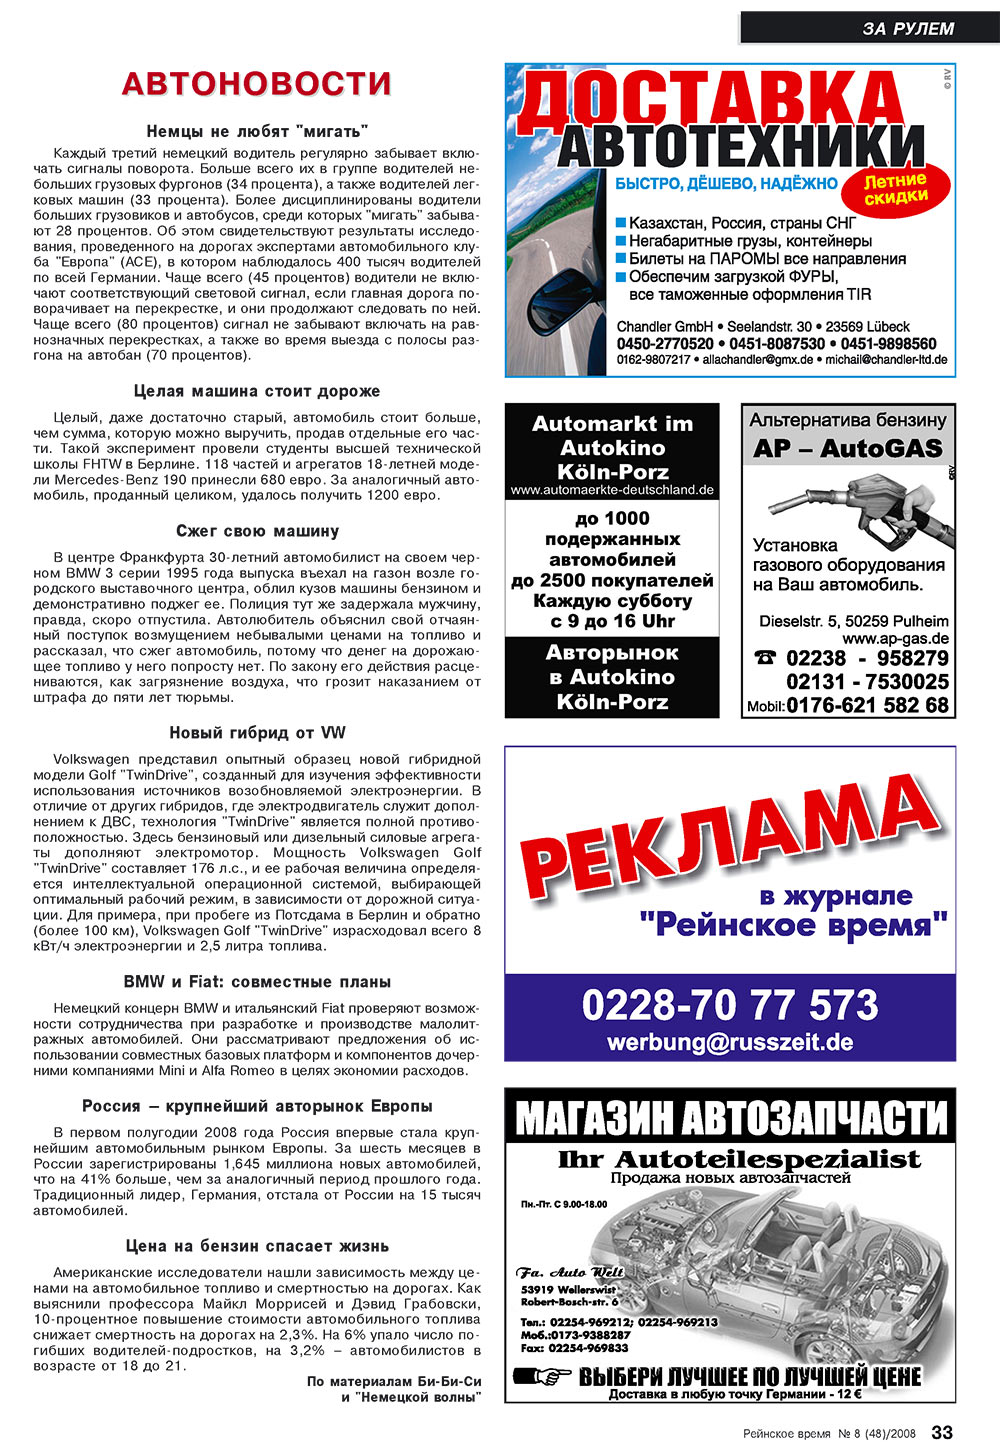 Rejnskoe vremja (Zeitschrift). 2008 Jahr, Ausgabe 8, Seite 33